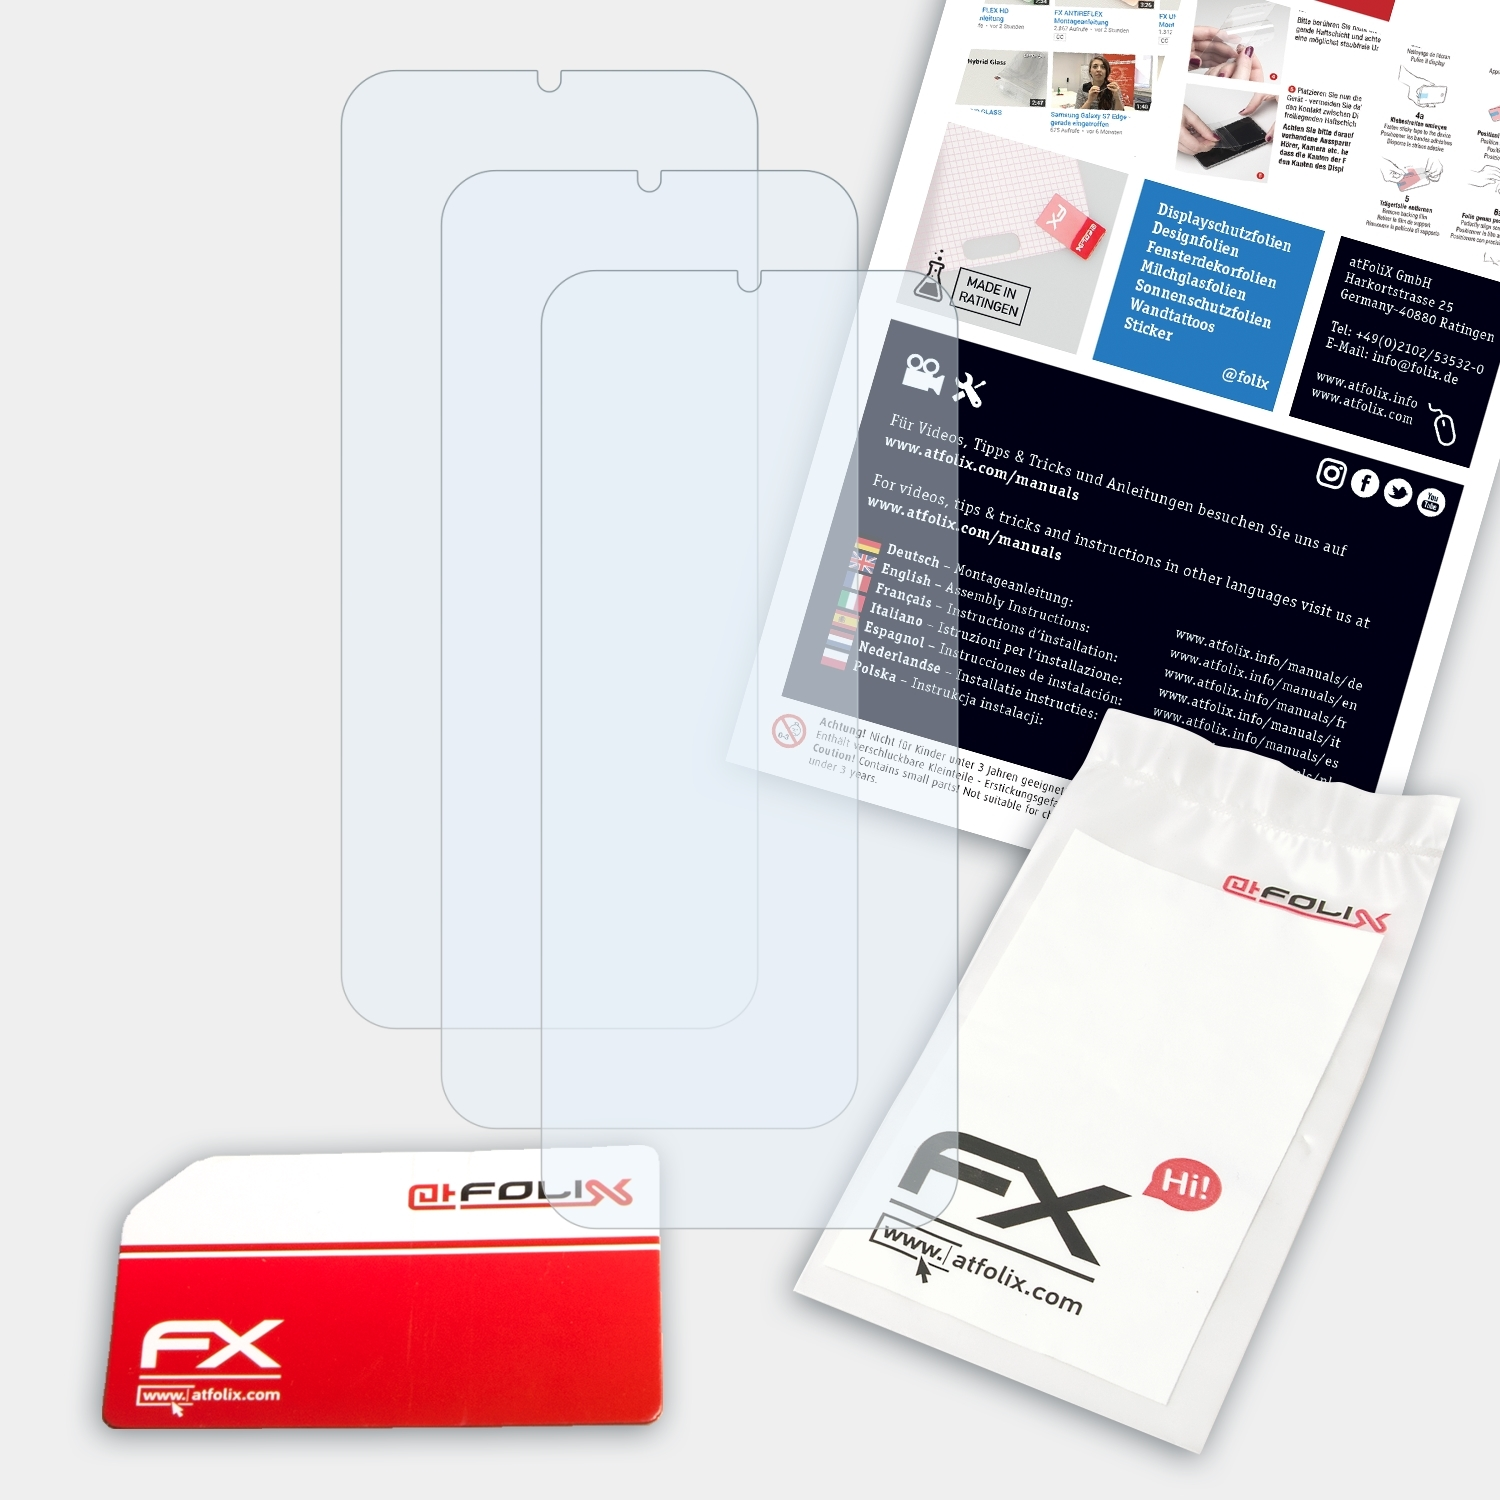 FX-Clear Infinix Lite) Displayschutz(für 8 3x Hot ATFOLIX